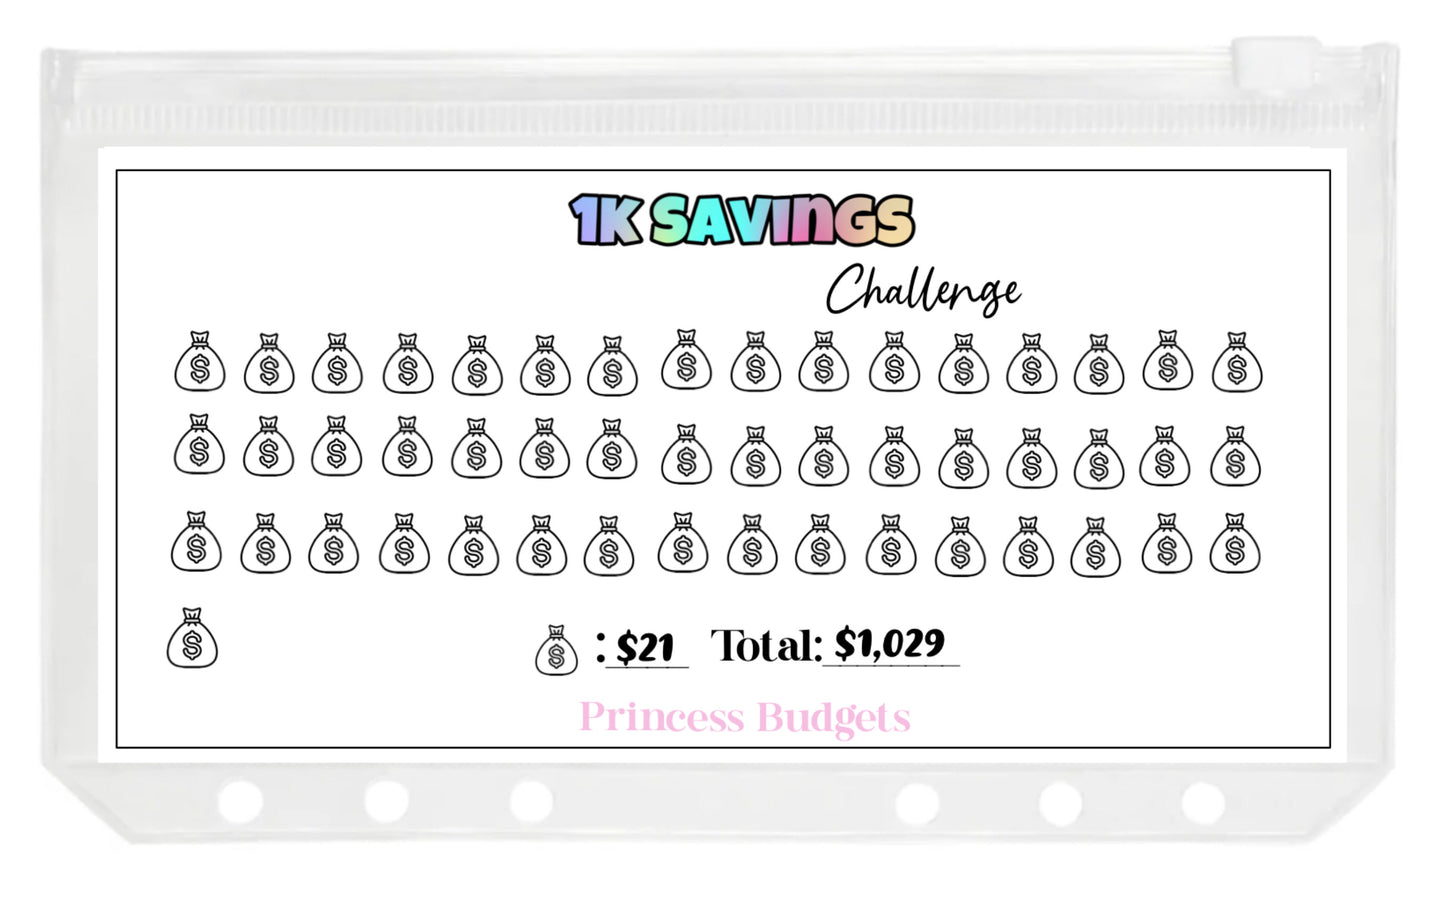 1k Savings Challenge